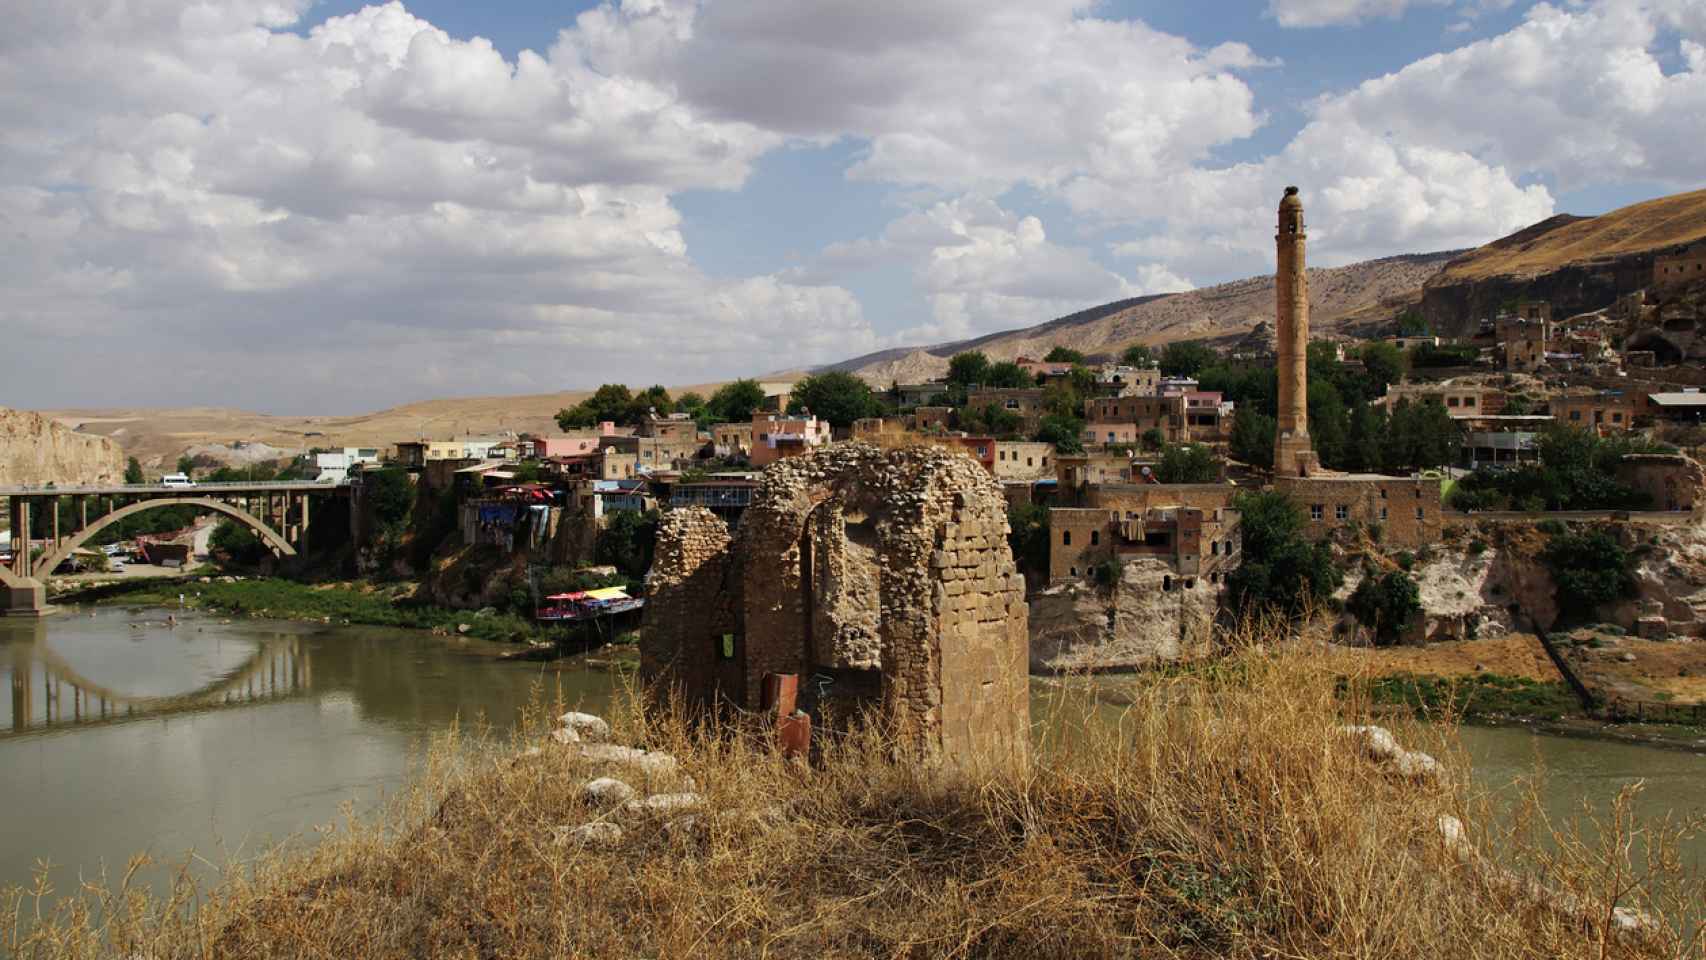 Las ruinas de Hasankeyf son una de las principales atracciones de Batman.